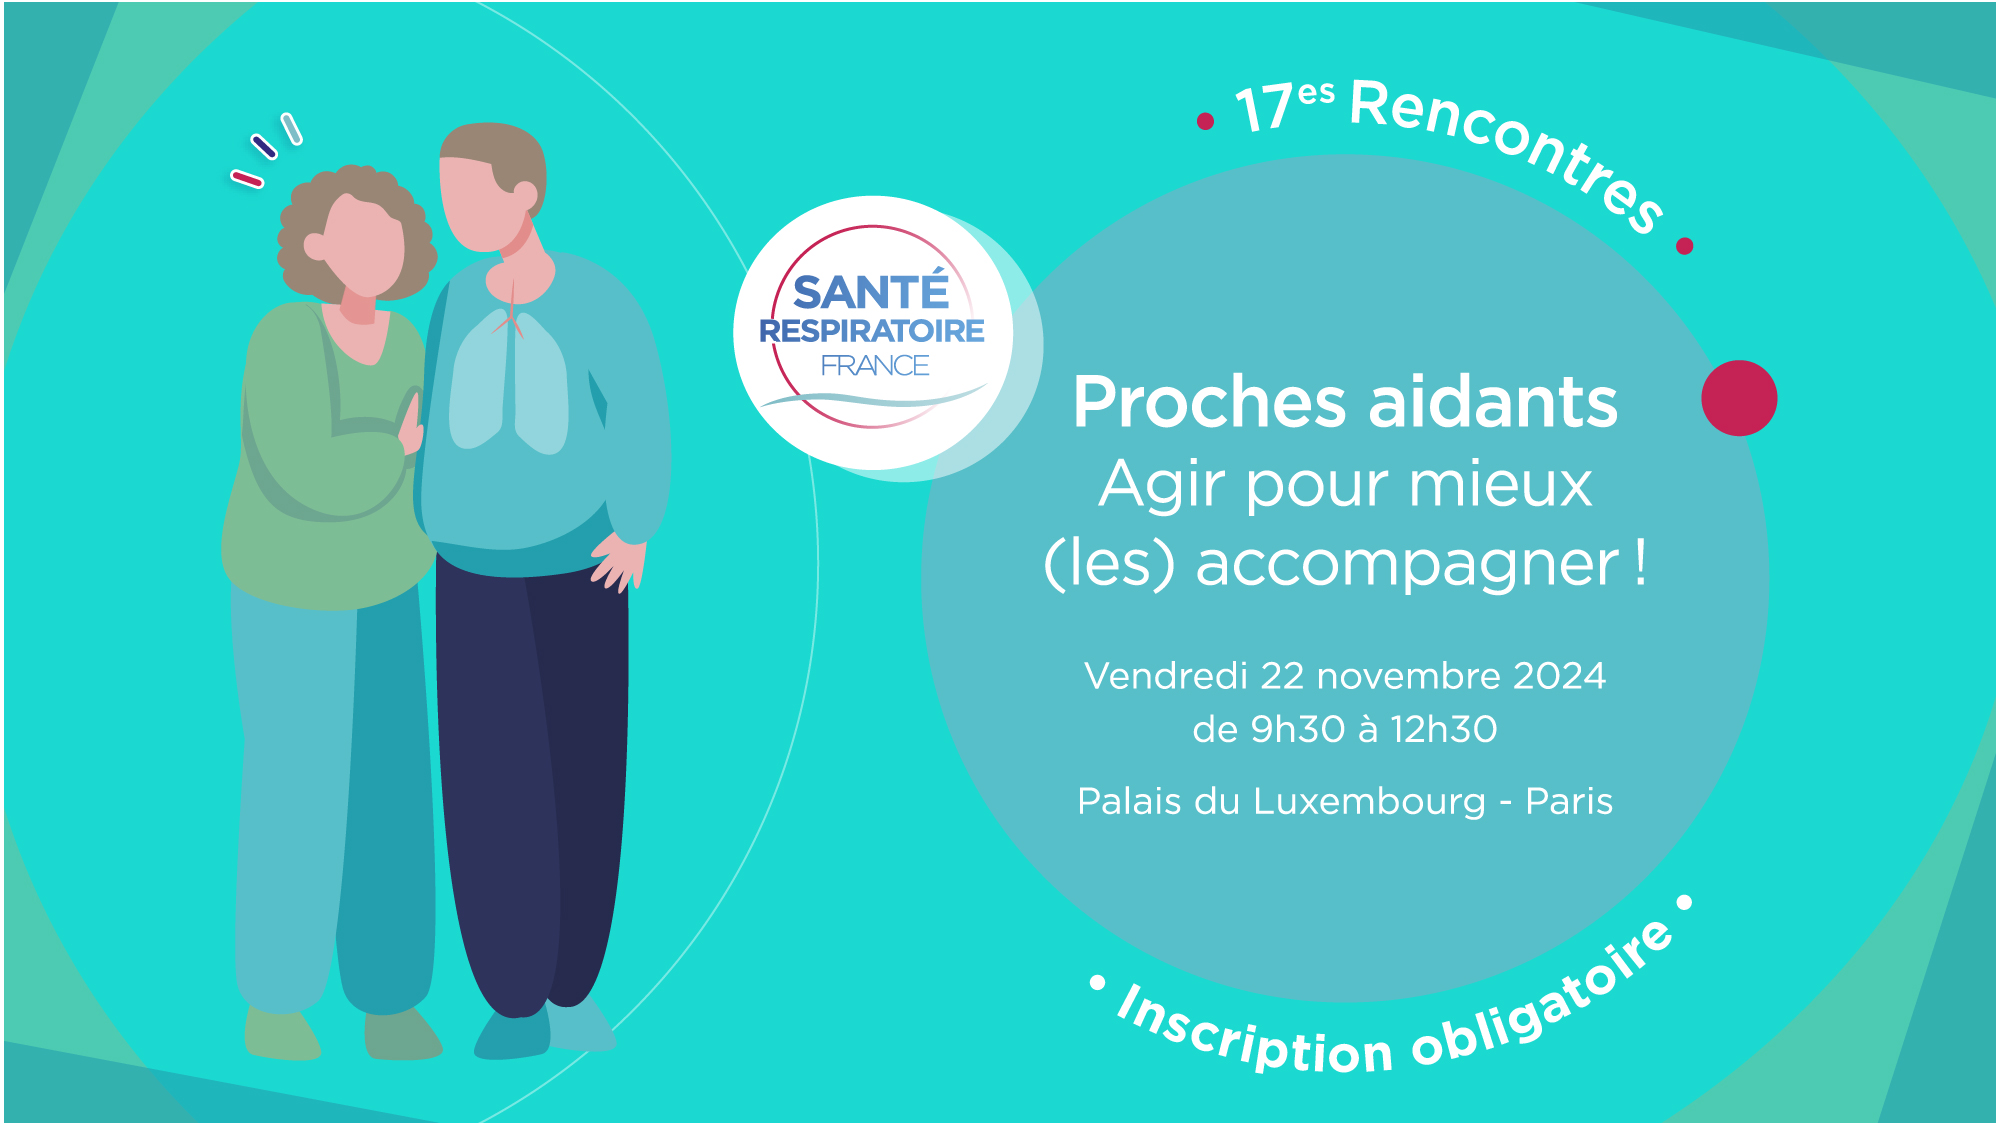 17es Rencontres Santé respiratoire France